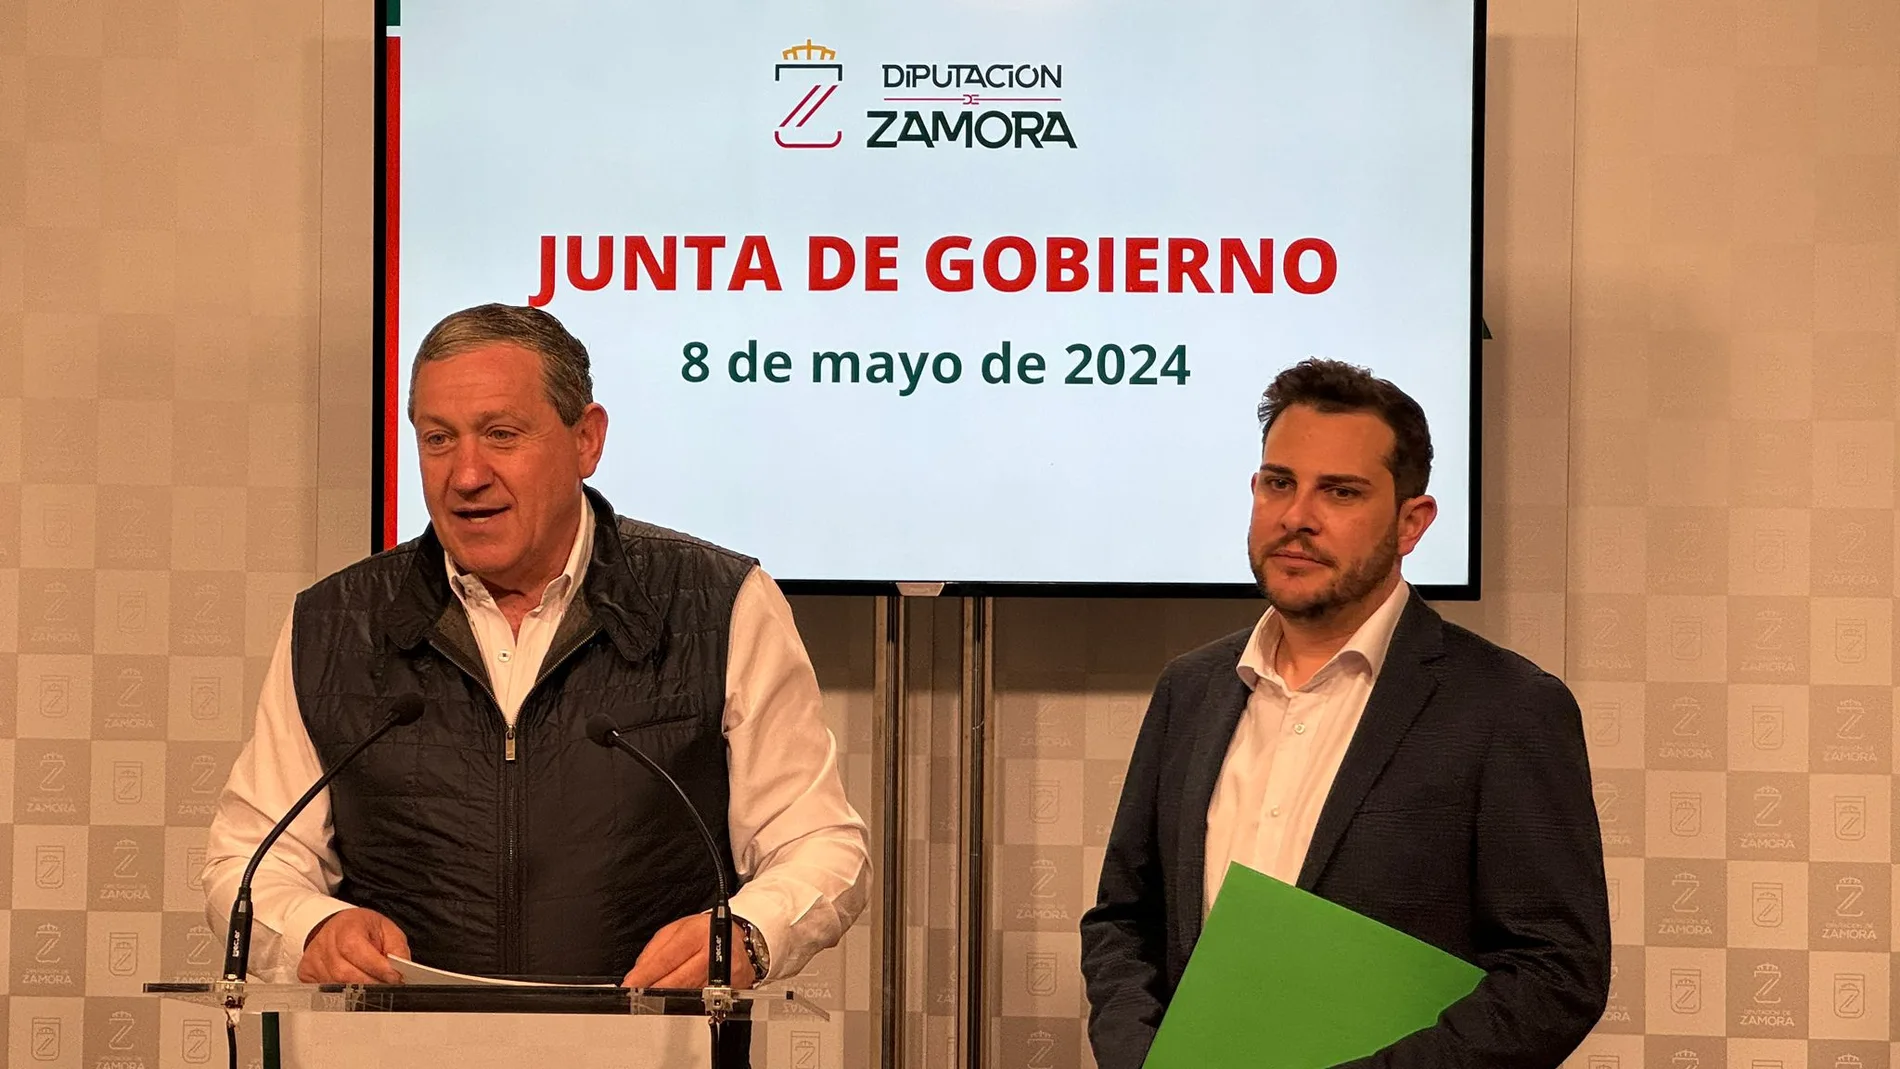 El presidente de la Diputación de Zamora, Javier Faúndez, y el vicepresidente, Víctor López, explican los acuerdos de la Junta de Gobierno